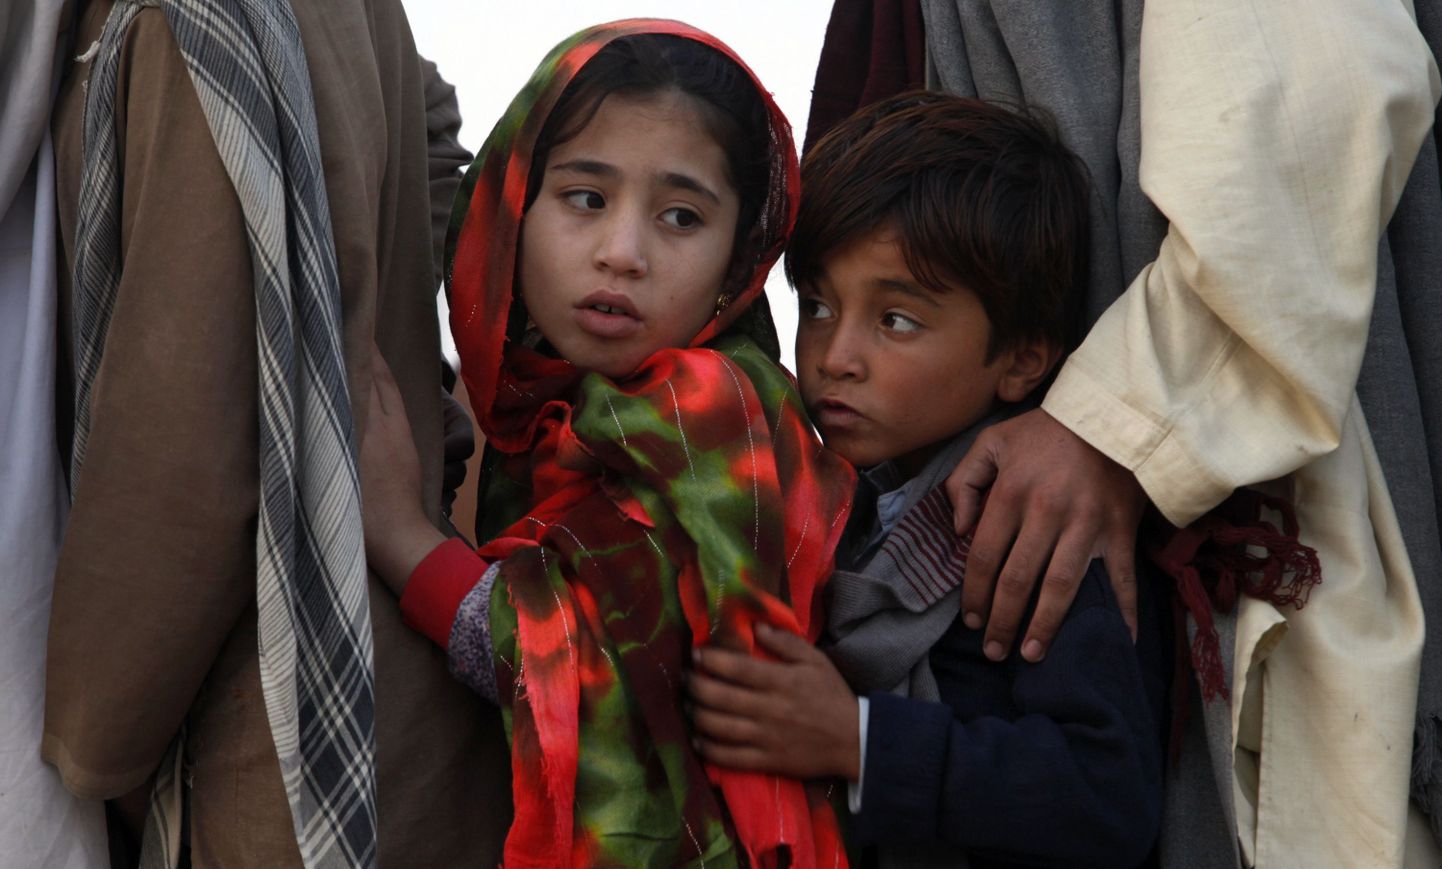 Tüdruk ja poiss põgenikejärjekorras.